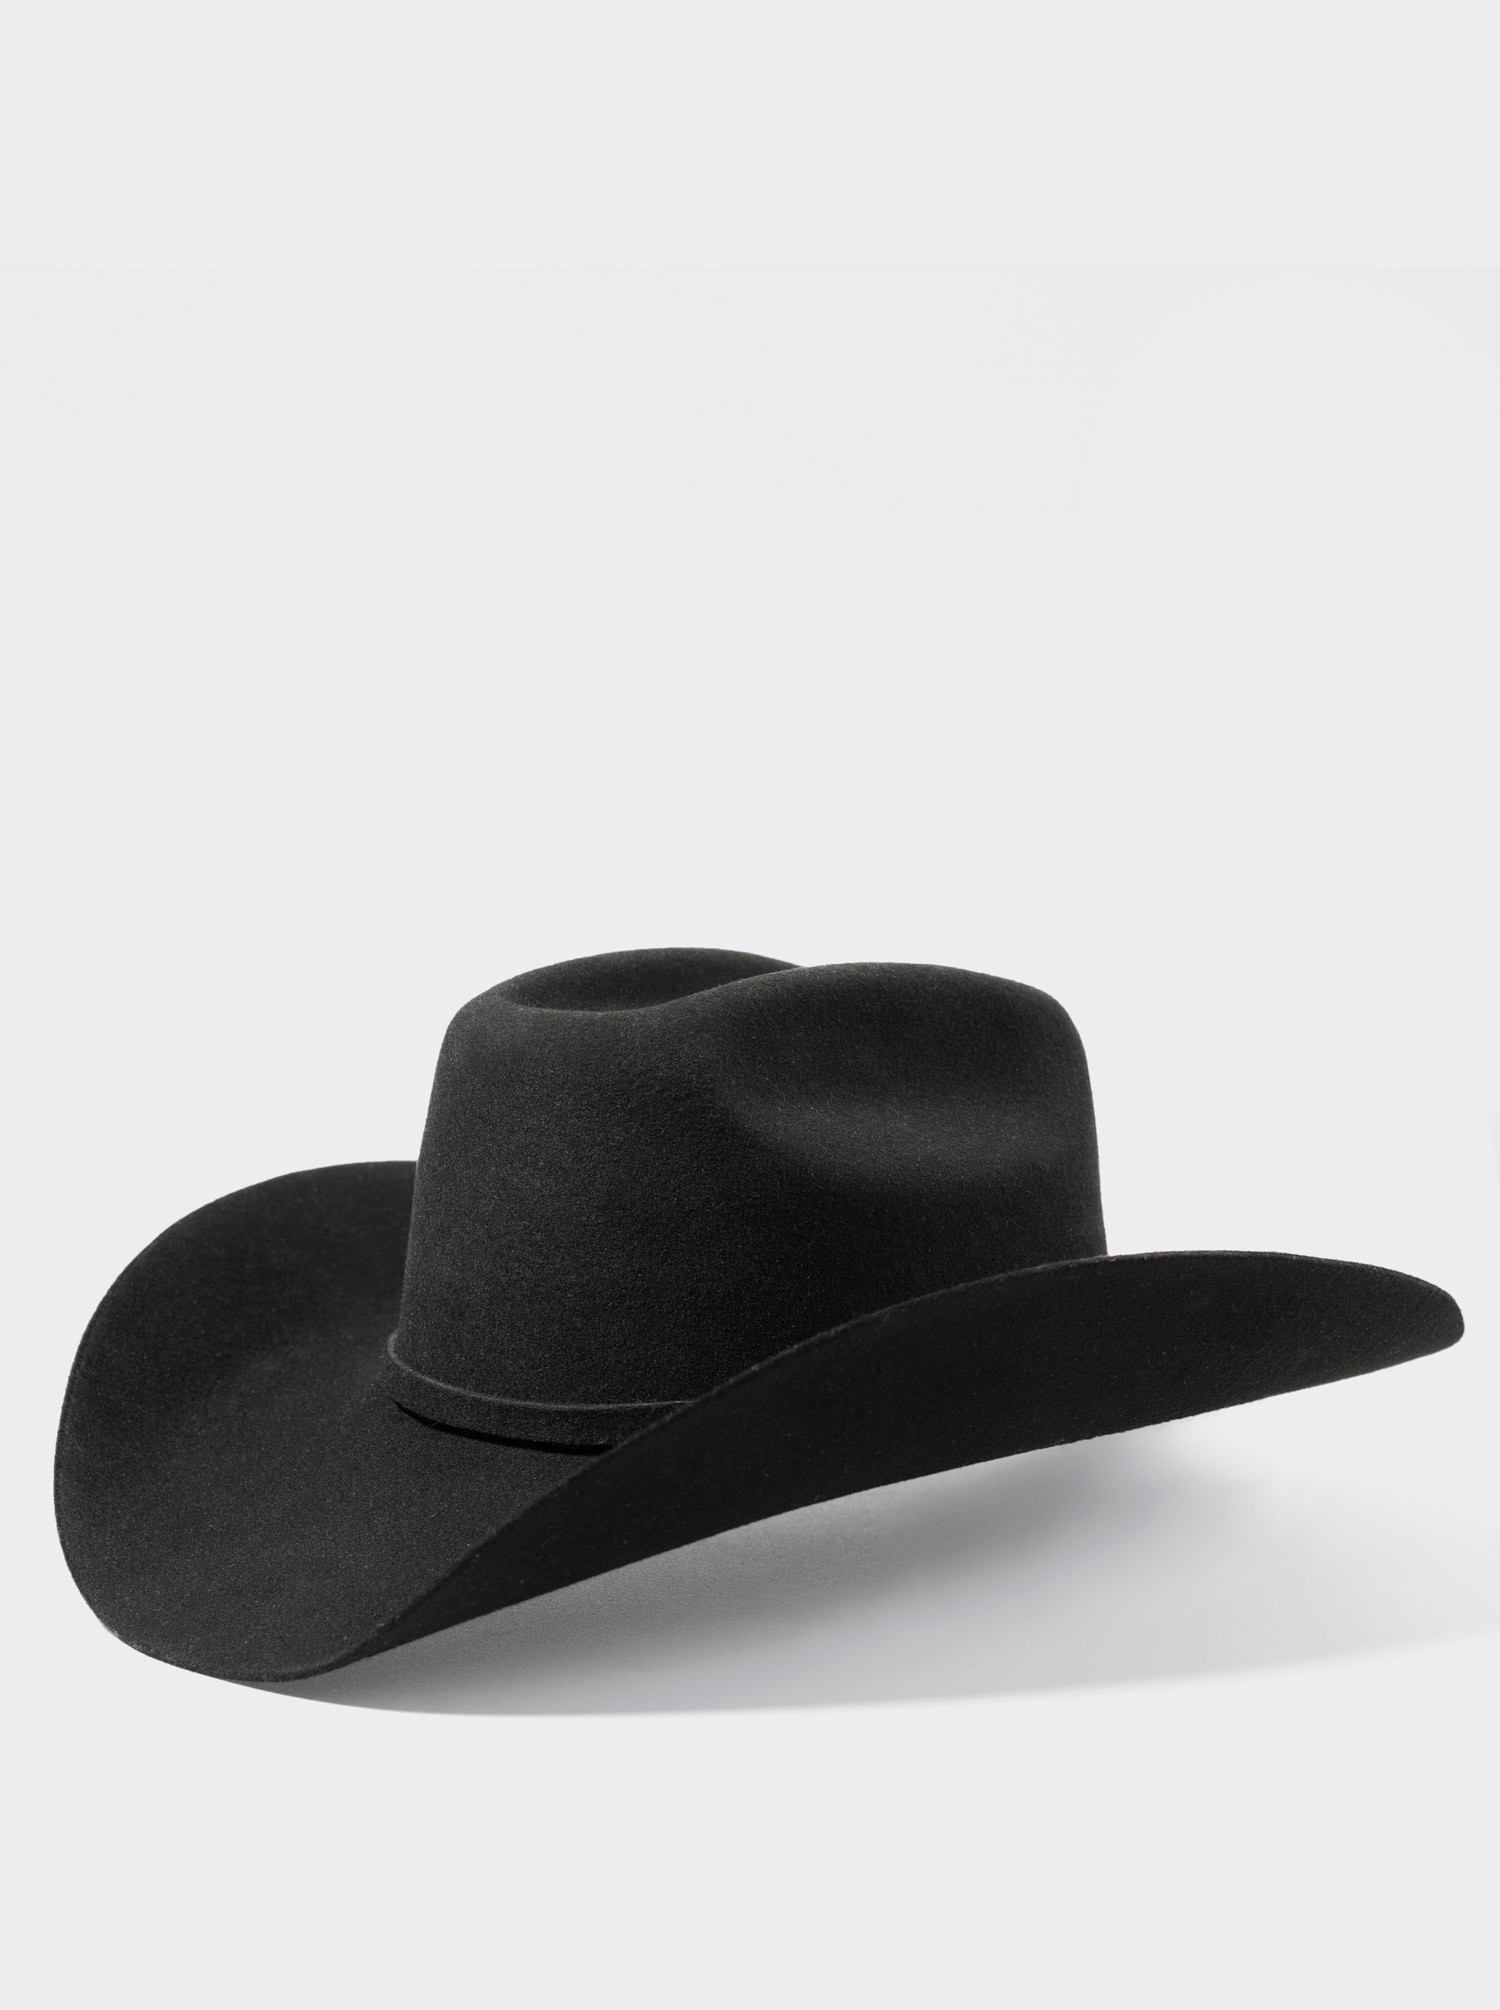 Sombrero Vaquero Unisex Estilo Texana 8 Segundos Lana Negro - Siete Leguas  US